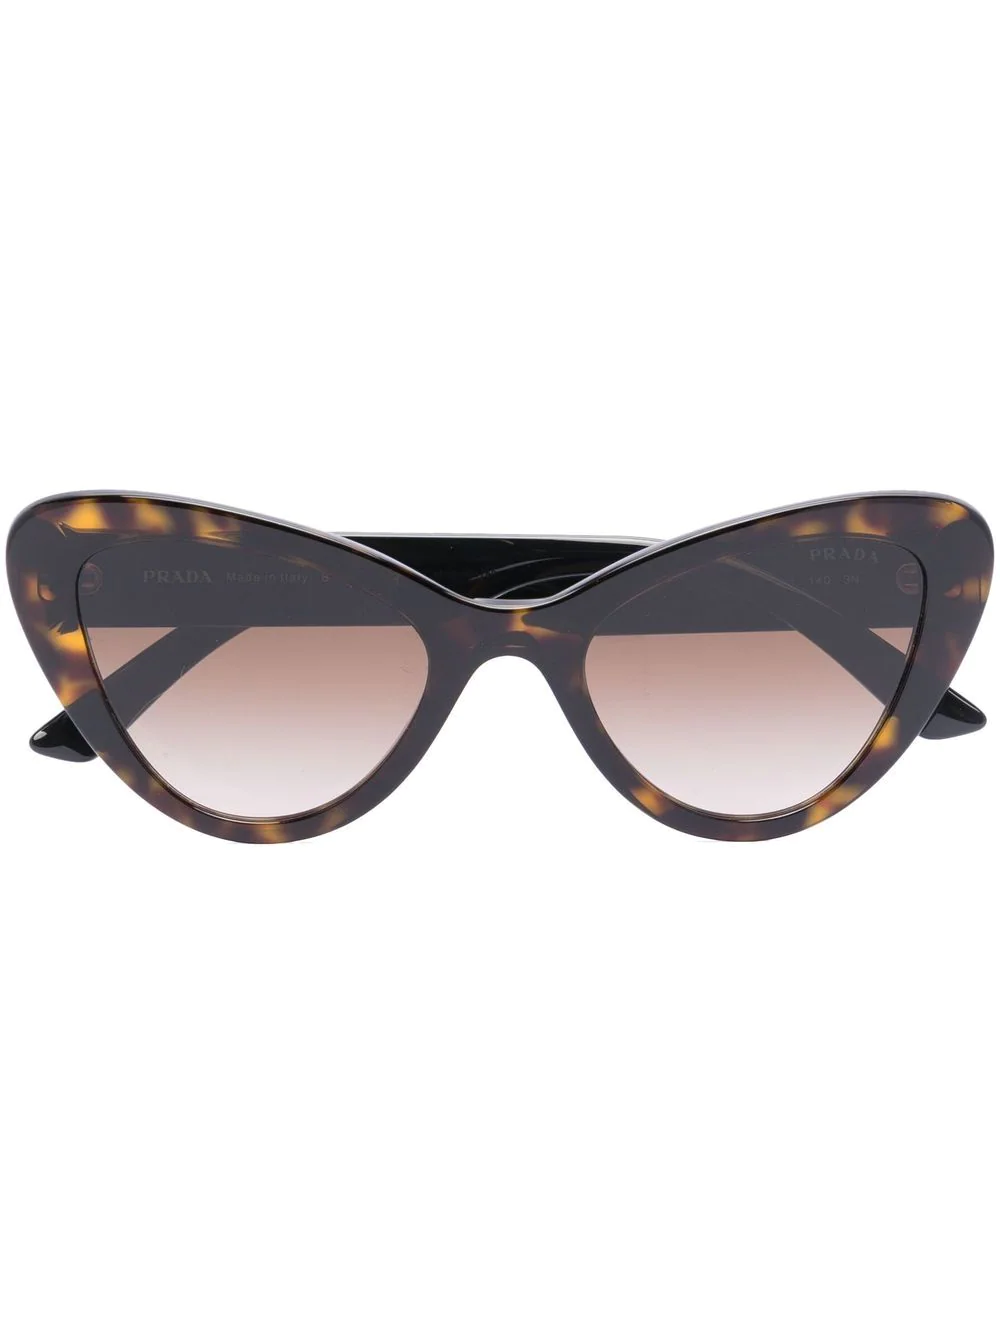 Tortoiseshell cat-eye Frame Sunglasses from Prada 